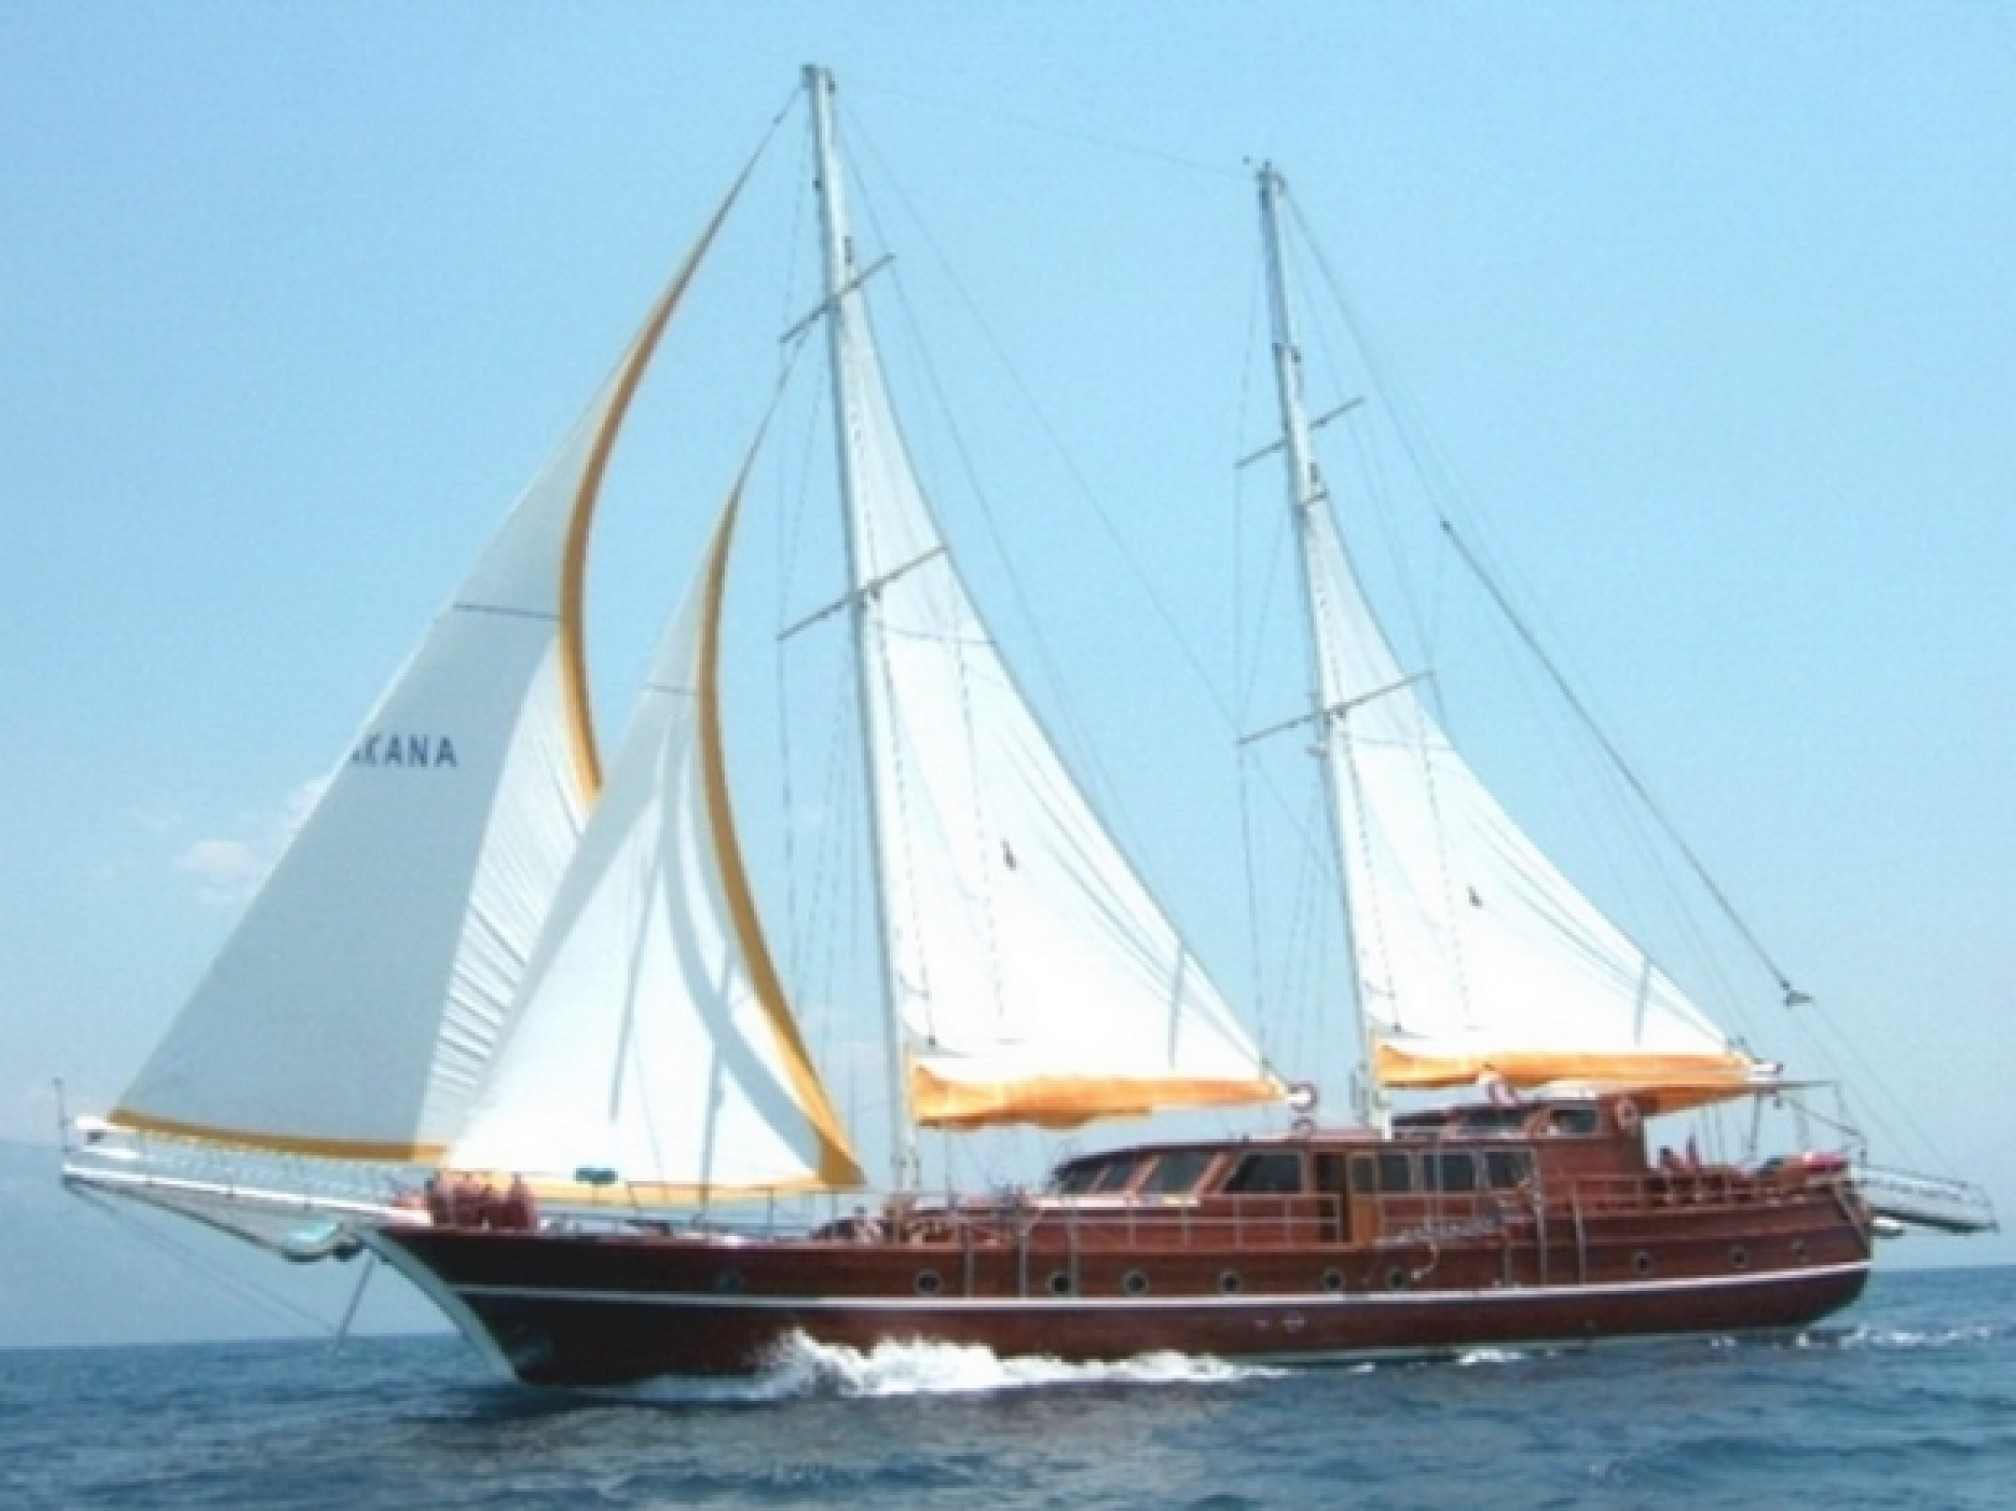 Akana luxury gulet charter sailing